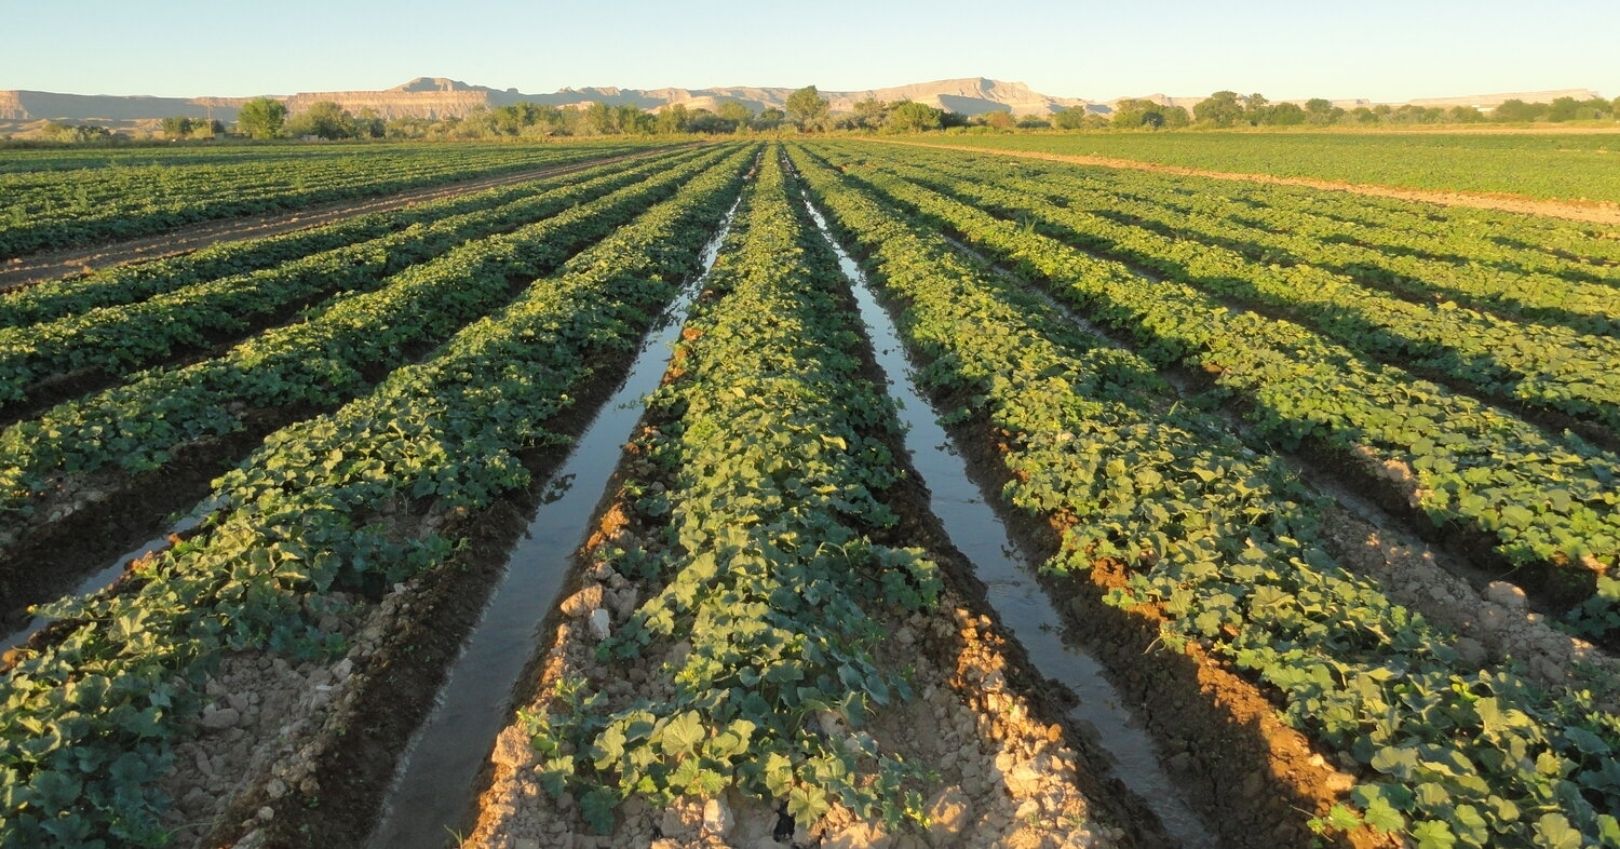 Furrow irrigation on a melon farm in Emery County, Utah